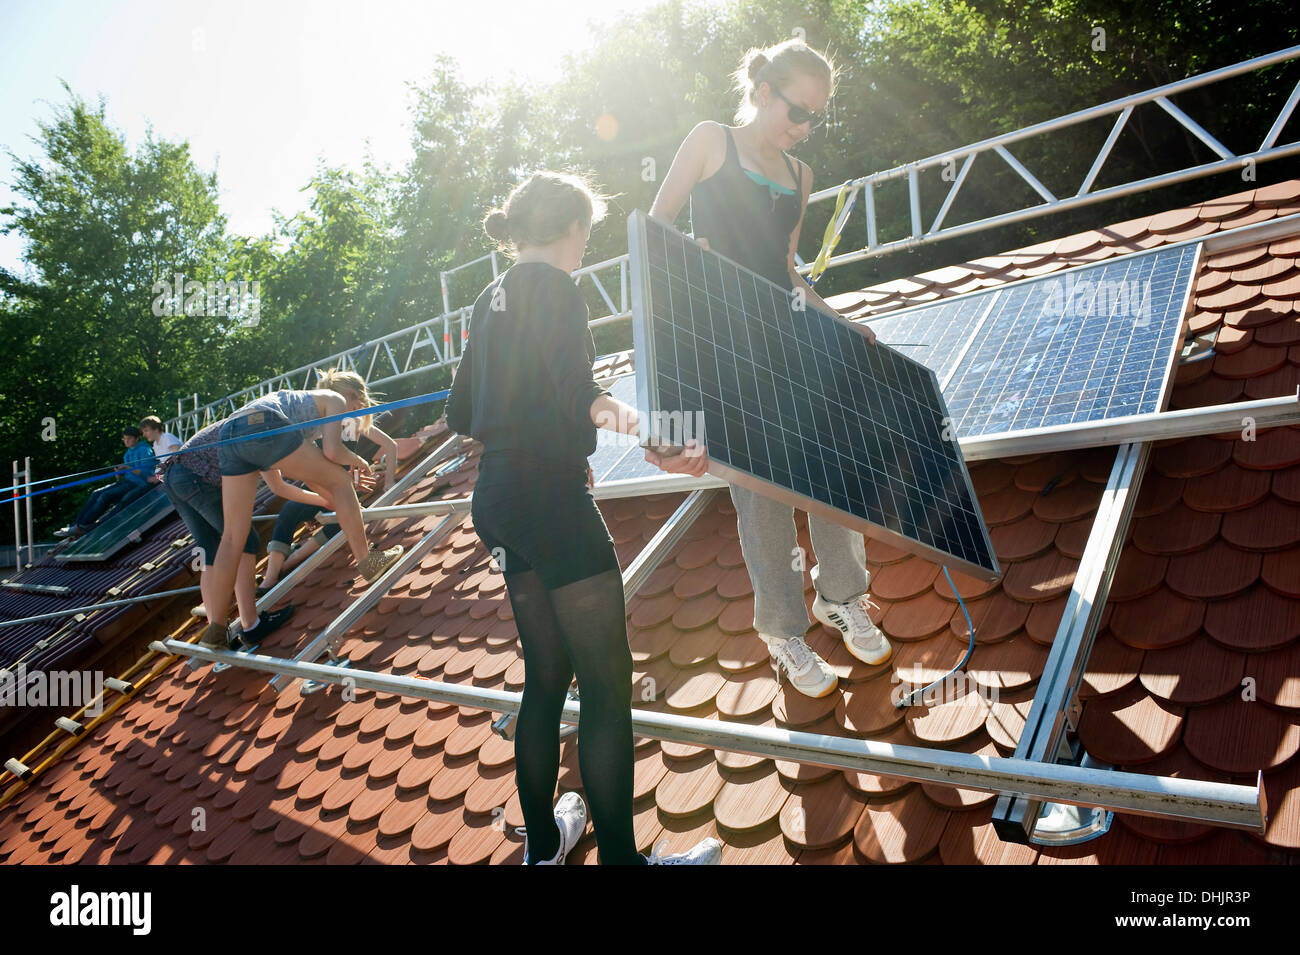 Progetto scuola, gli studenti installando un impianto solare, Freiburg im Breisgau, Foresta Nera, Baden-Wuerttemberg, Germania, Europa Foto Stock